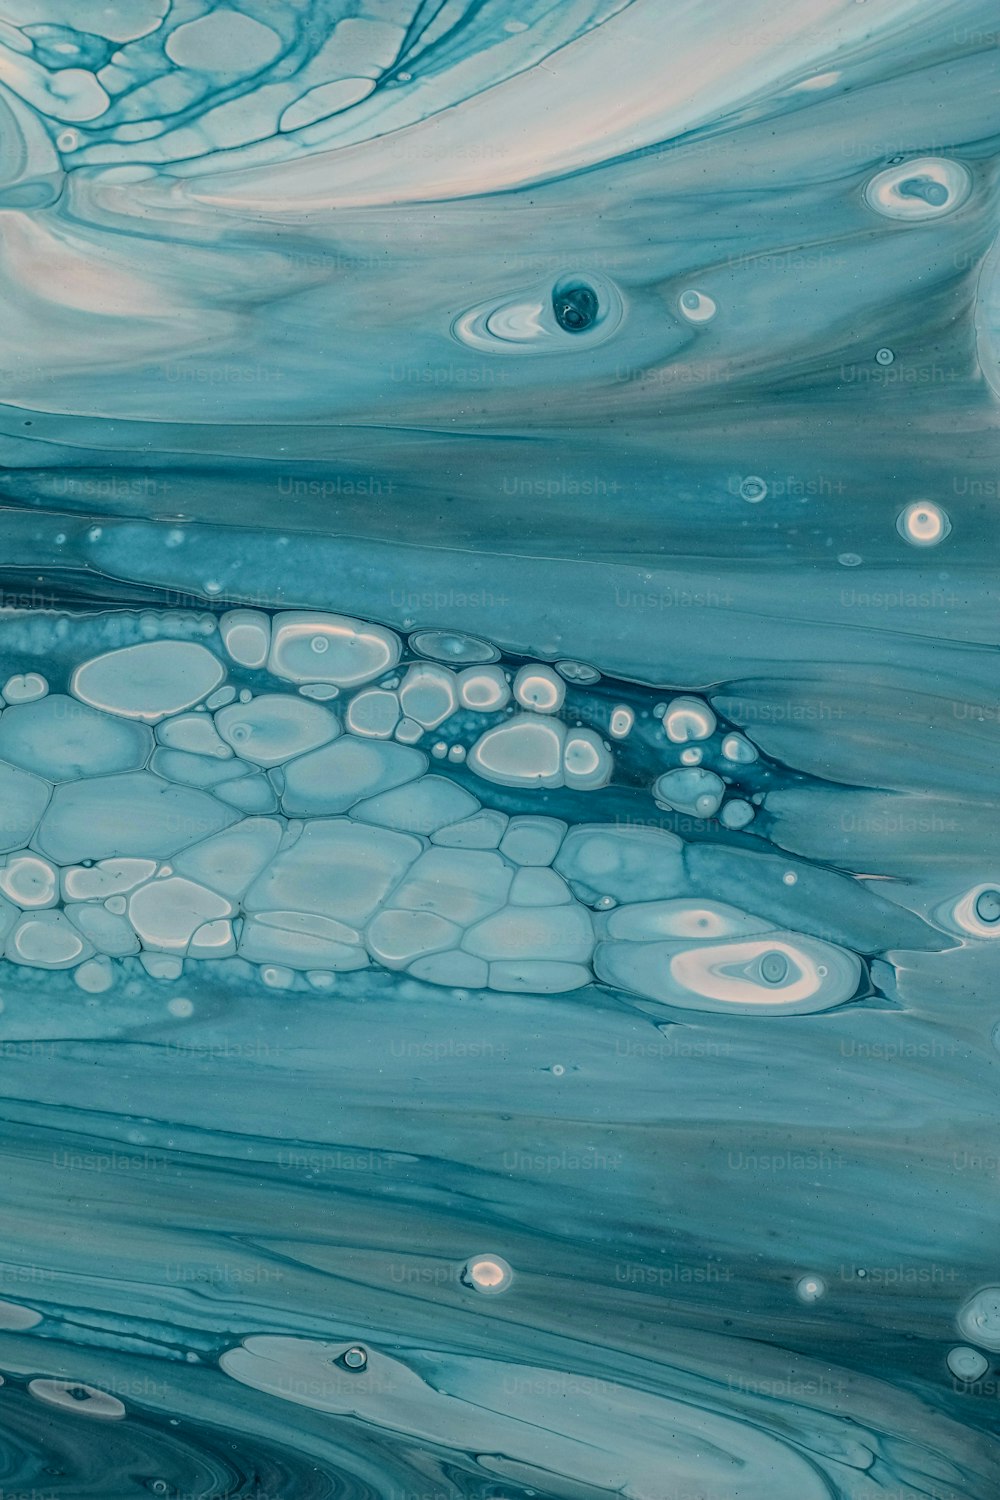 Un dipinto di acqua blu e bianca con bolle